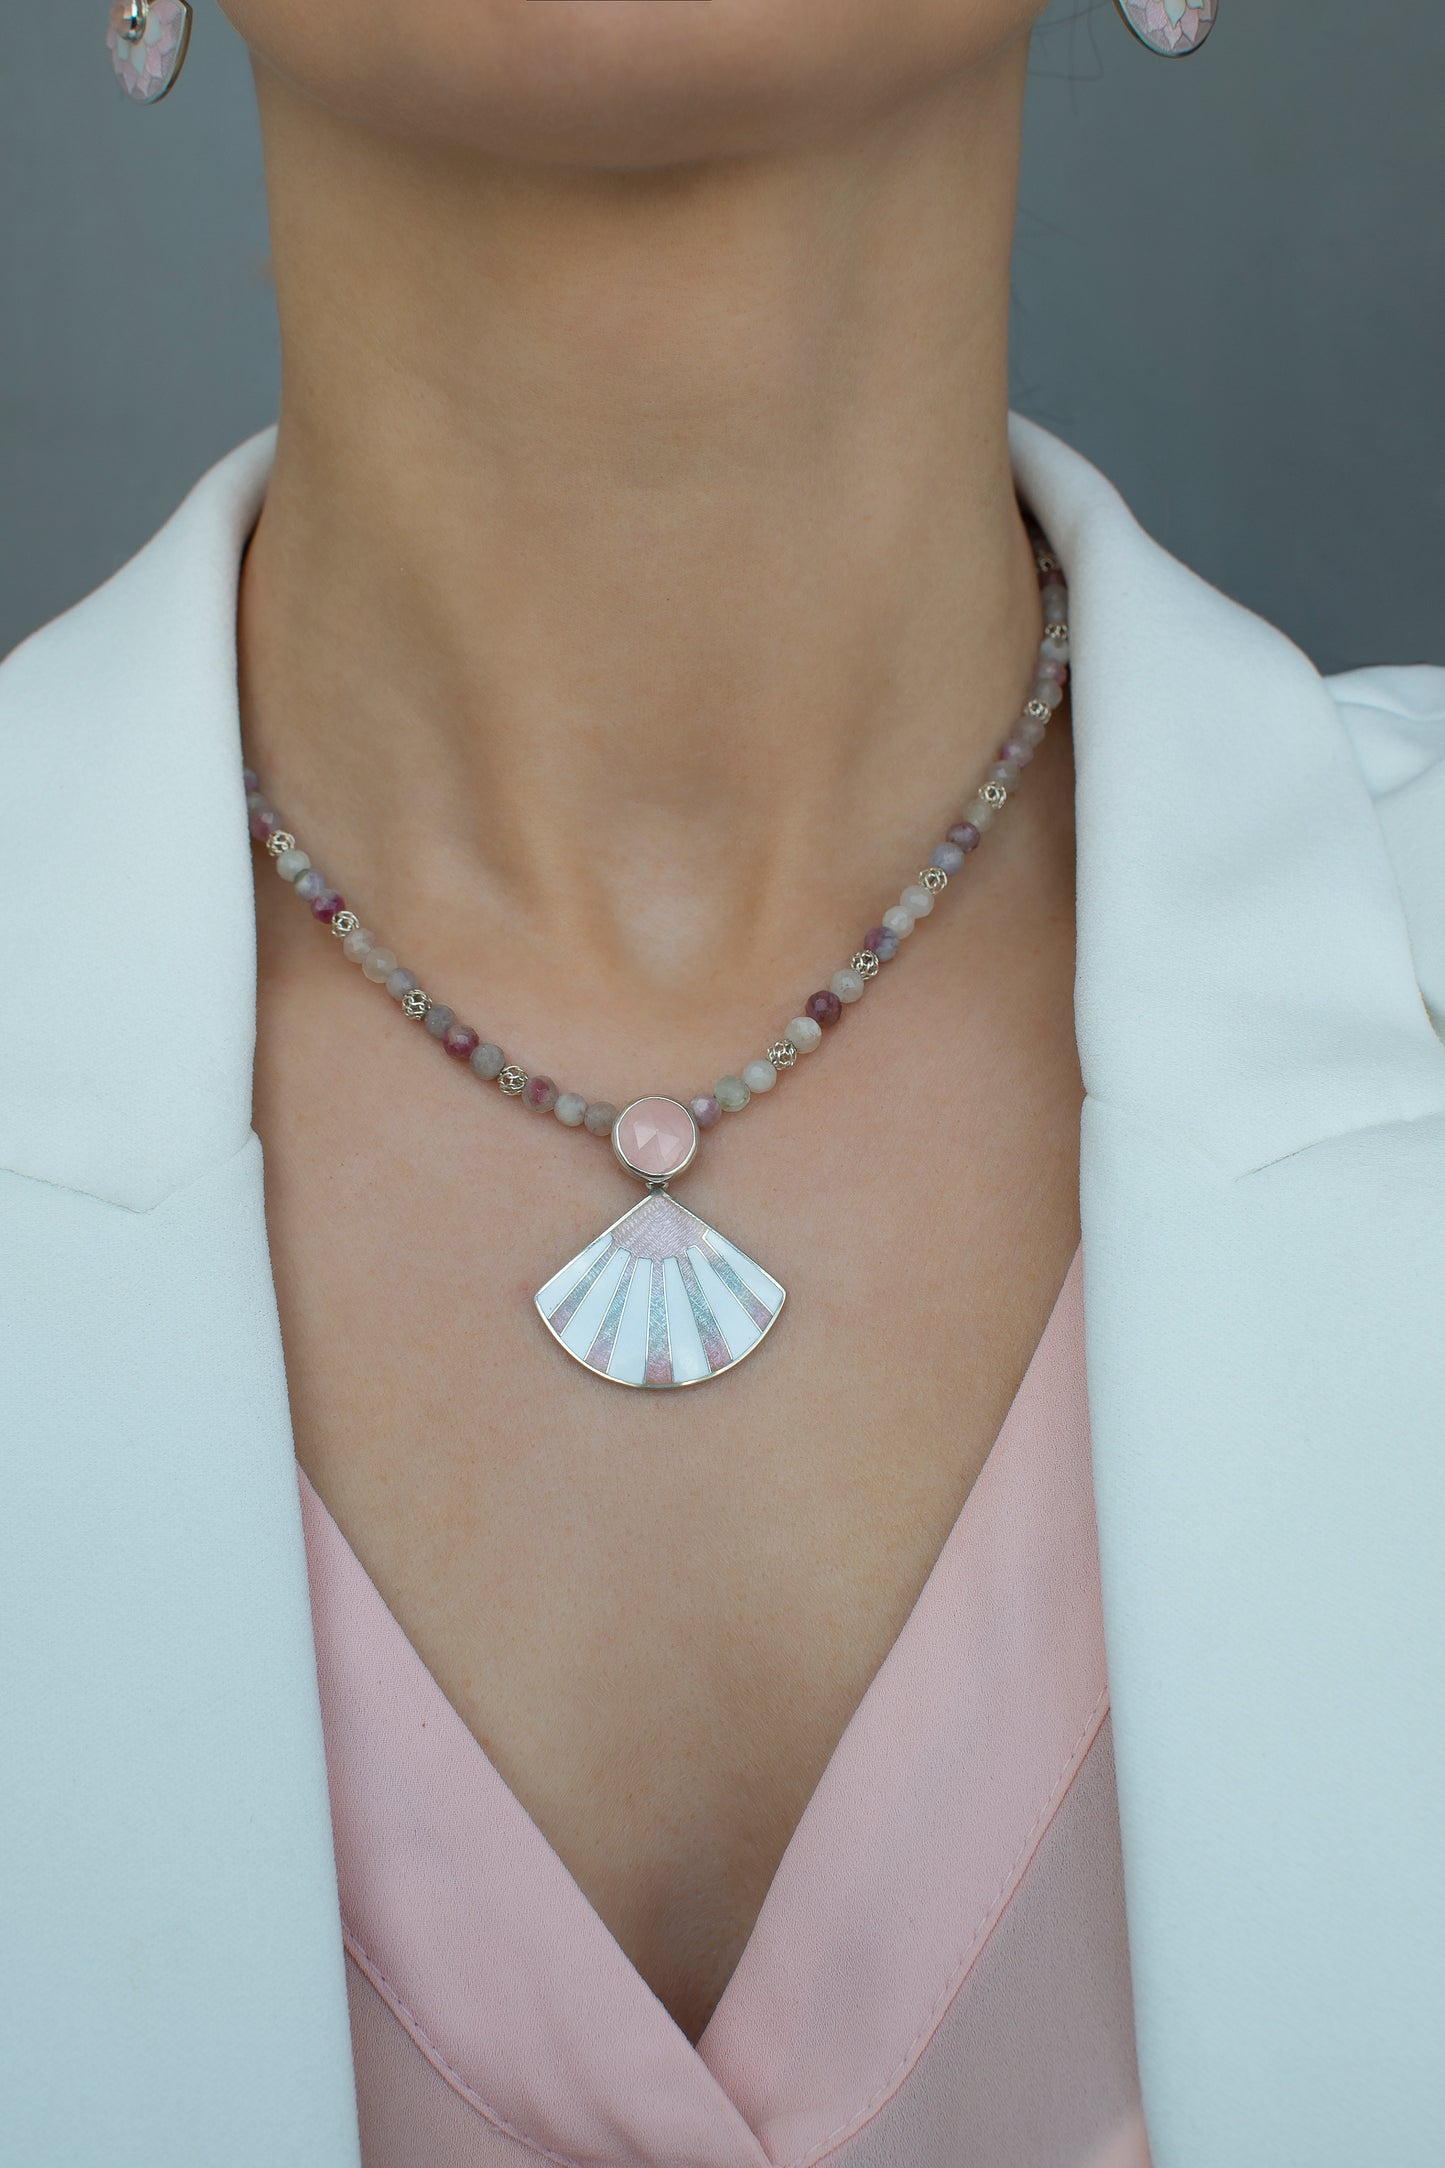 Cloisonne Enamel Pendant With Rose Quartz And Tourmaline Necklace